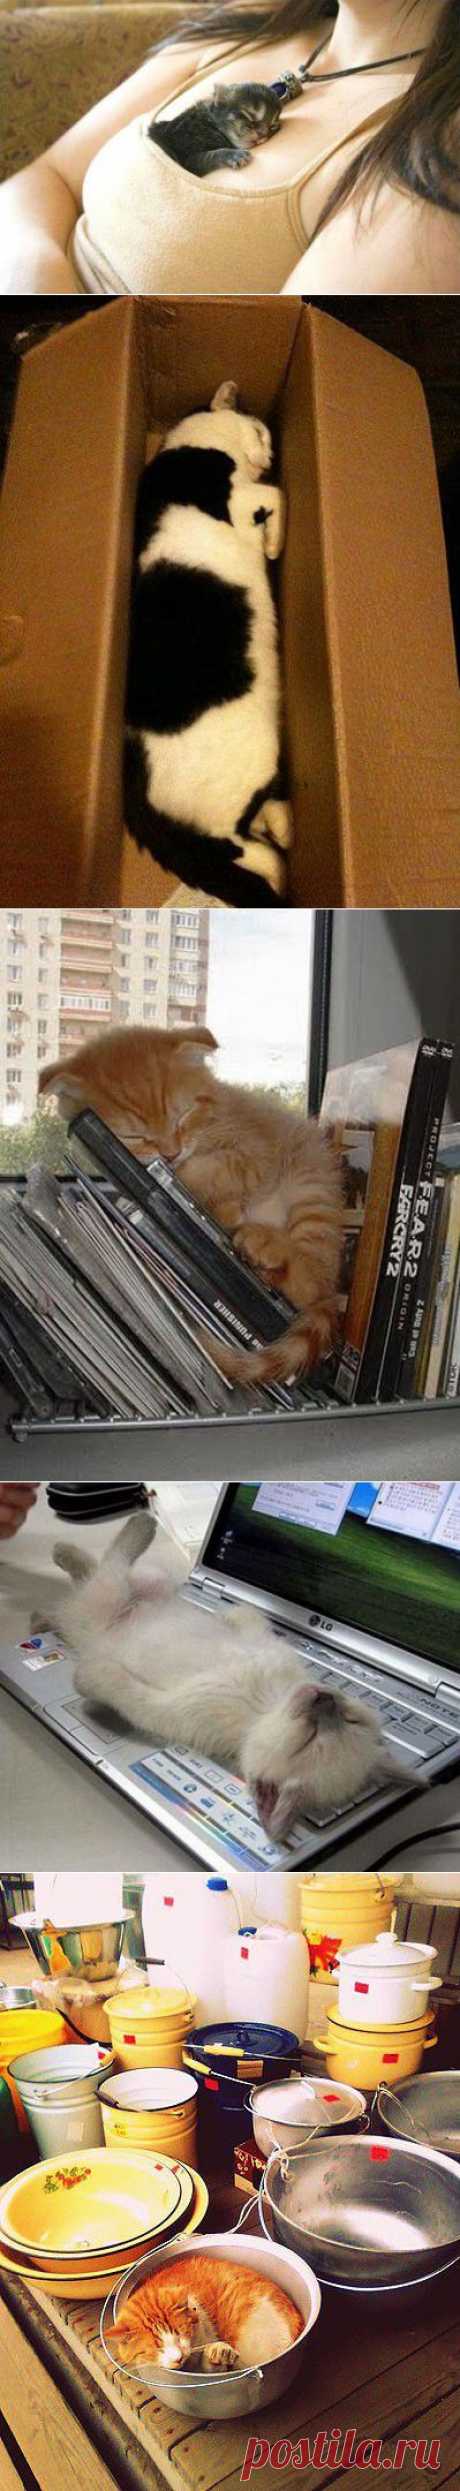 Кошки, спящие в странных местах